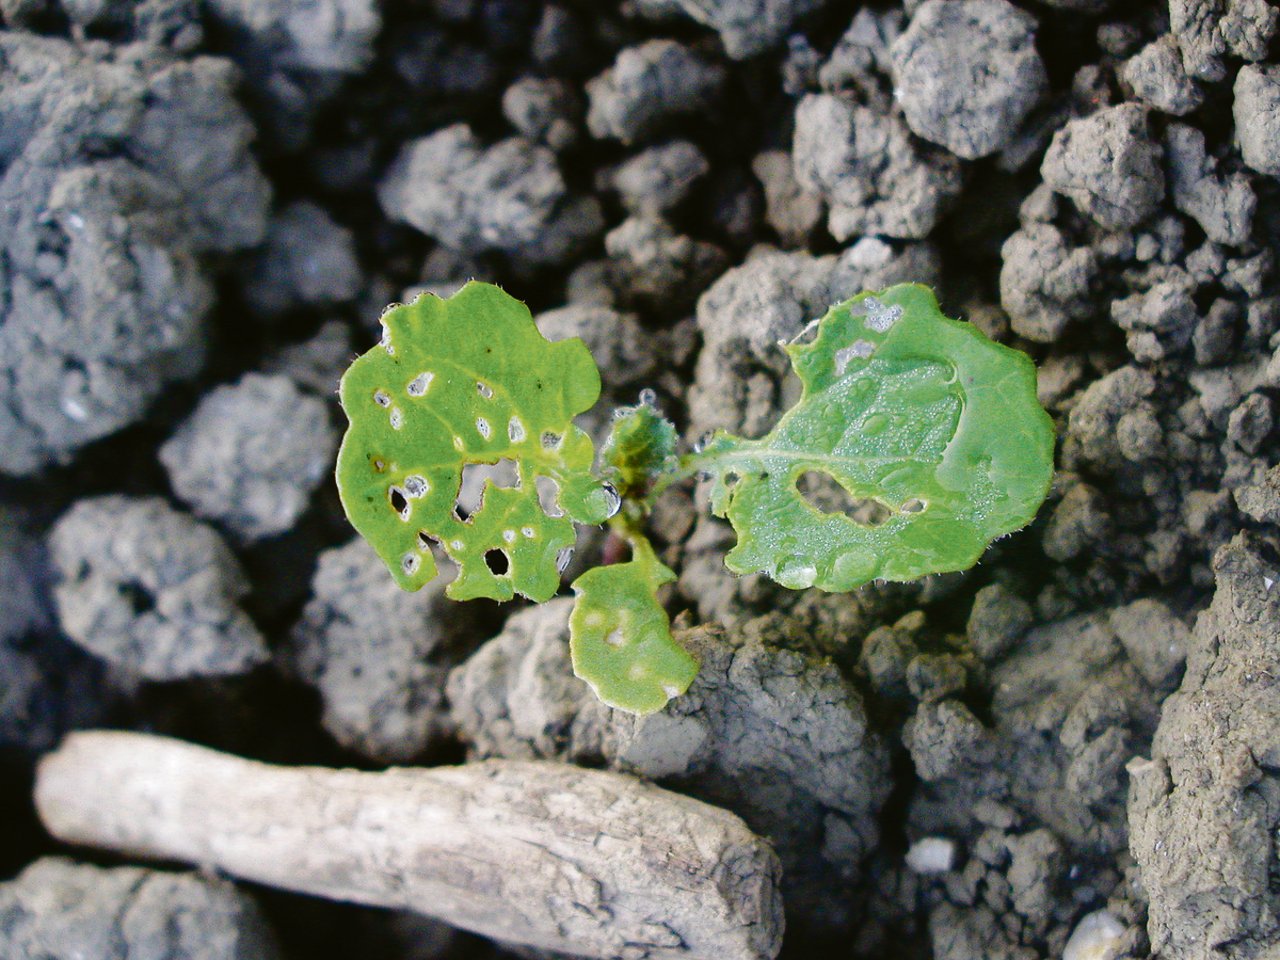 Rapspflanze im 2-Blatt-Stadium mit Schneckenfrass und Erdflohschaden. (Bild Jonas Zürcher)